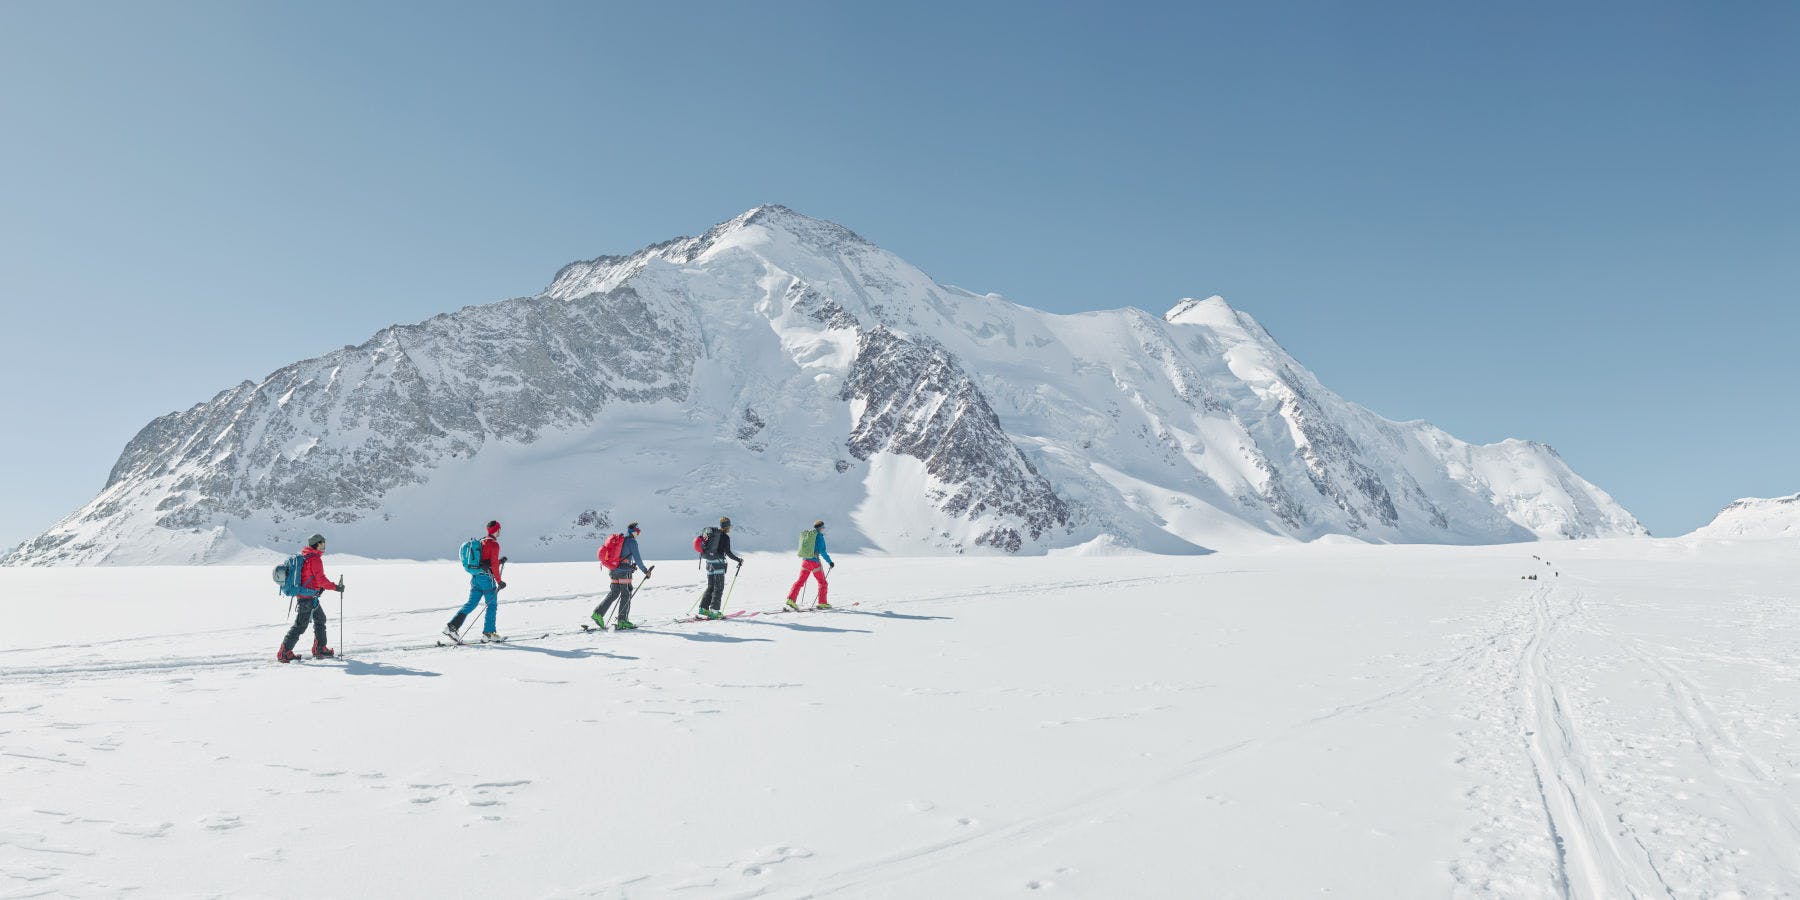 Murtomaahiihtäjät hiihtämässä vuoristossa. Luminen vuoristomaisema taustalla.